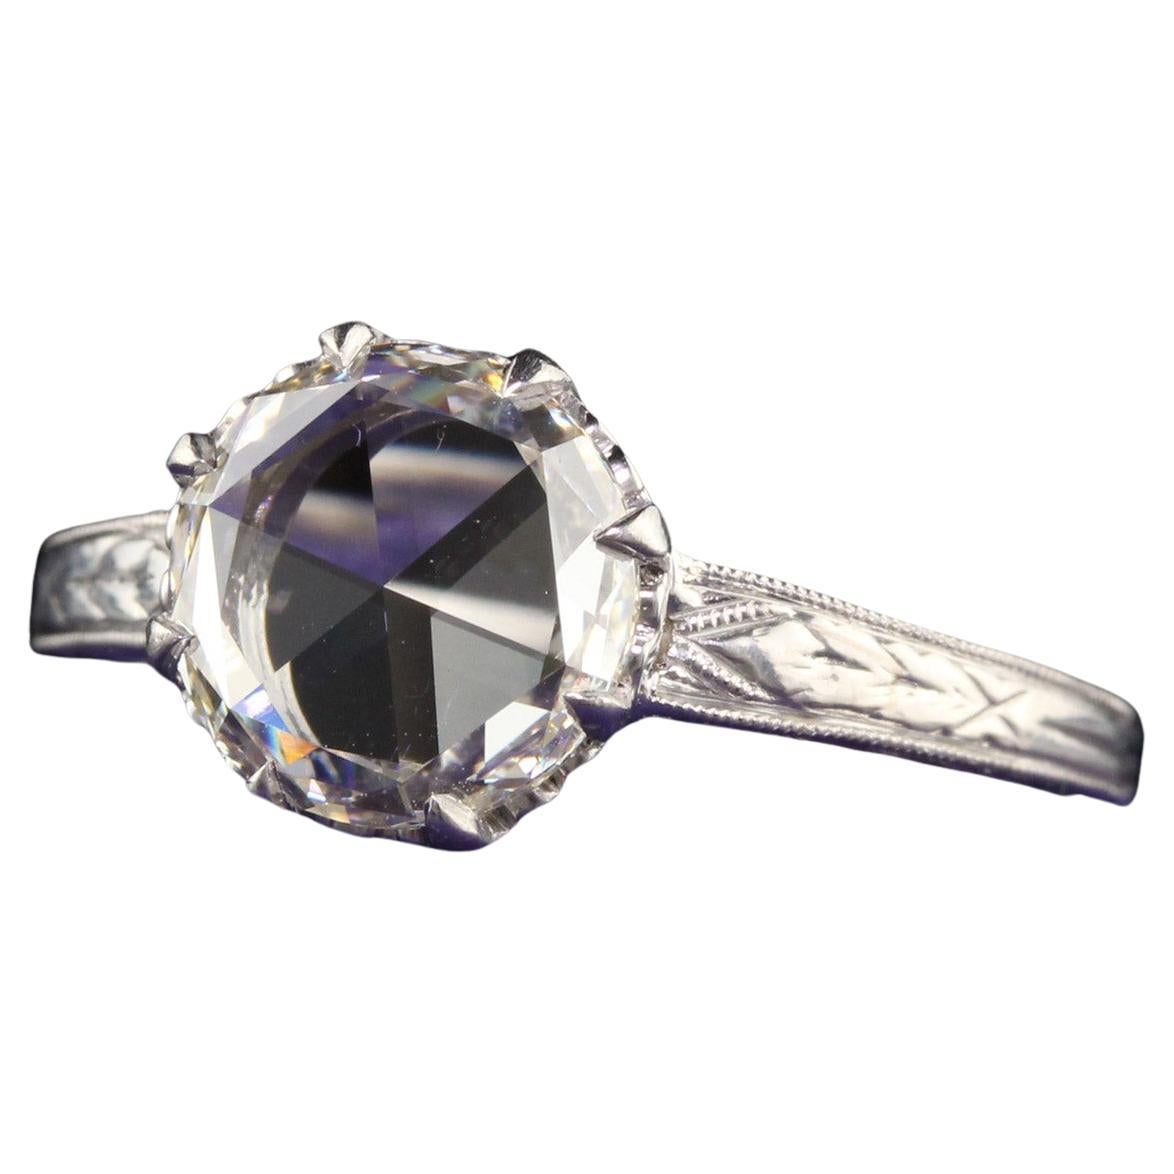 Antique Art Deco Platinum Rose Cut Diamond Engagement Ring - GIA